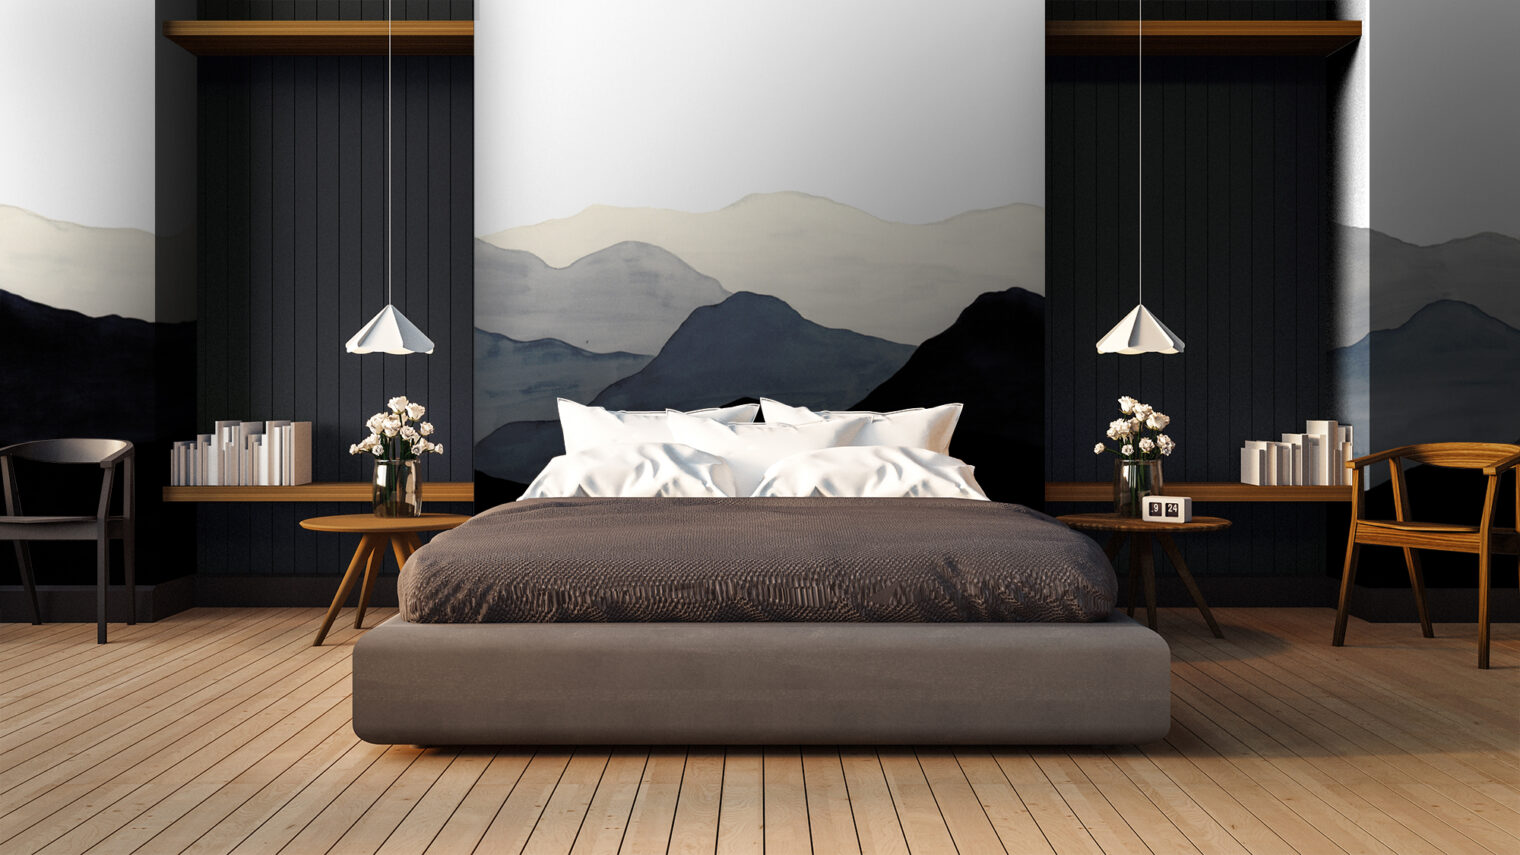 シックなトーンに合わせて、客室全体を山々が囲むようなアーティスティックなデザイン